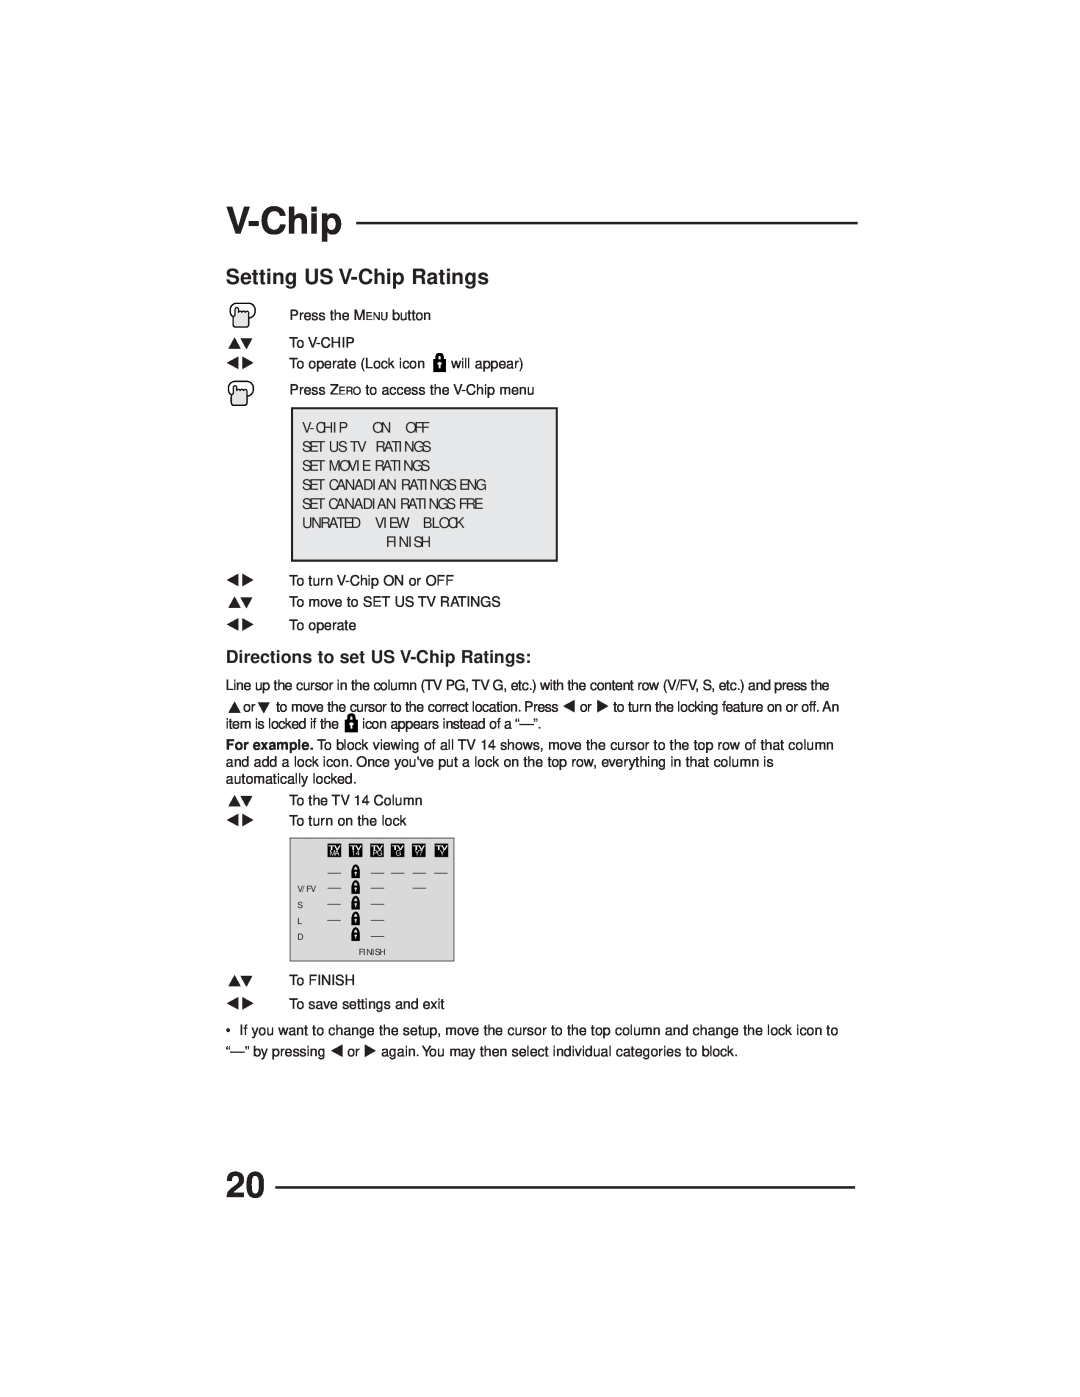 JVC AV-27GFH manual Setting US V-Chip Ratings, Directions to set US V-Chip Ratings, Finish 